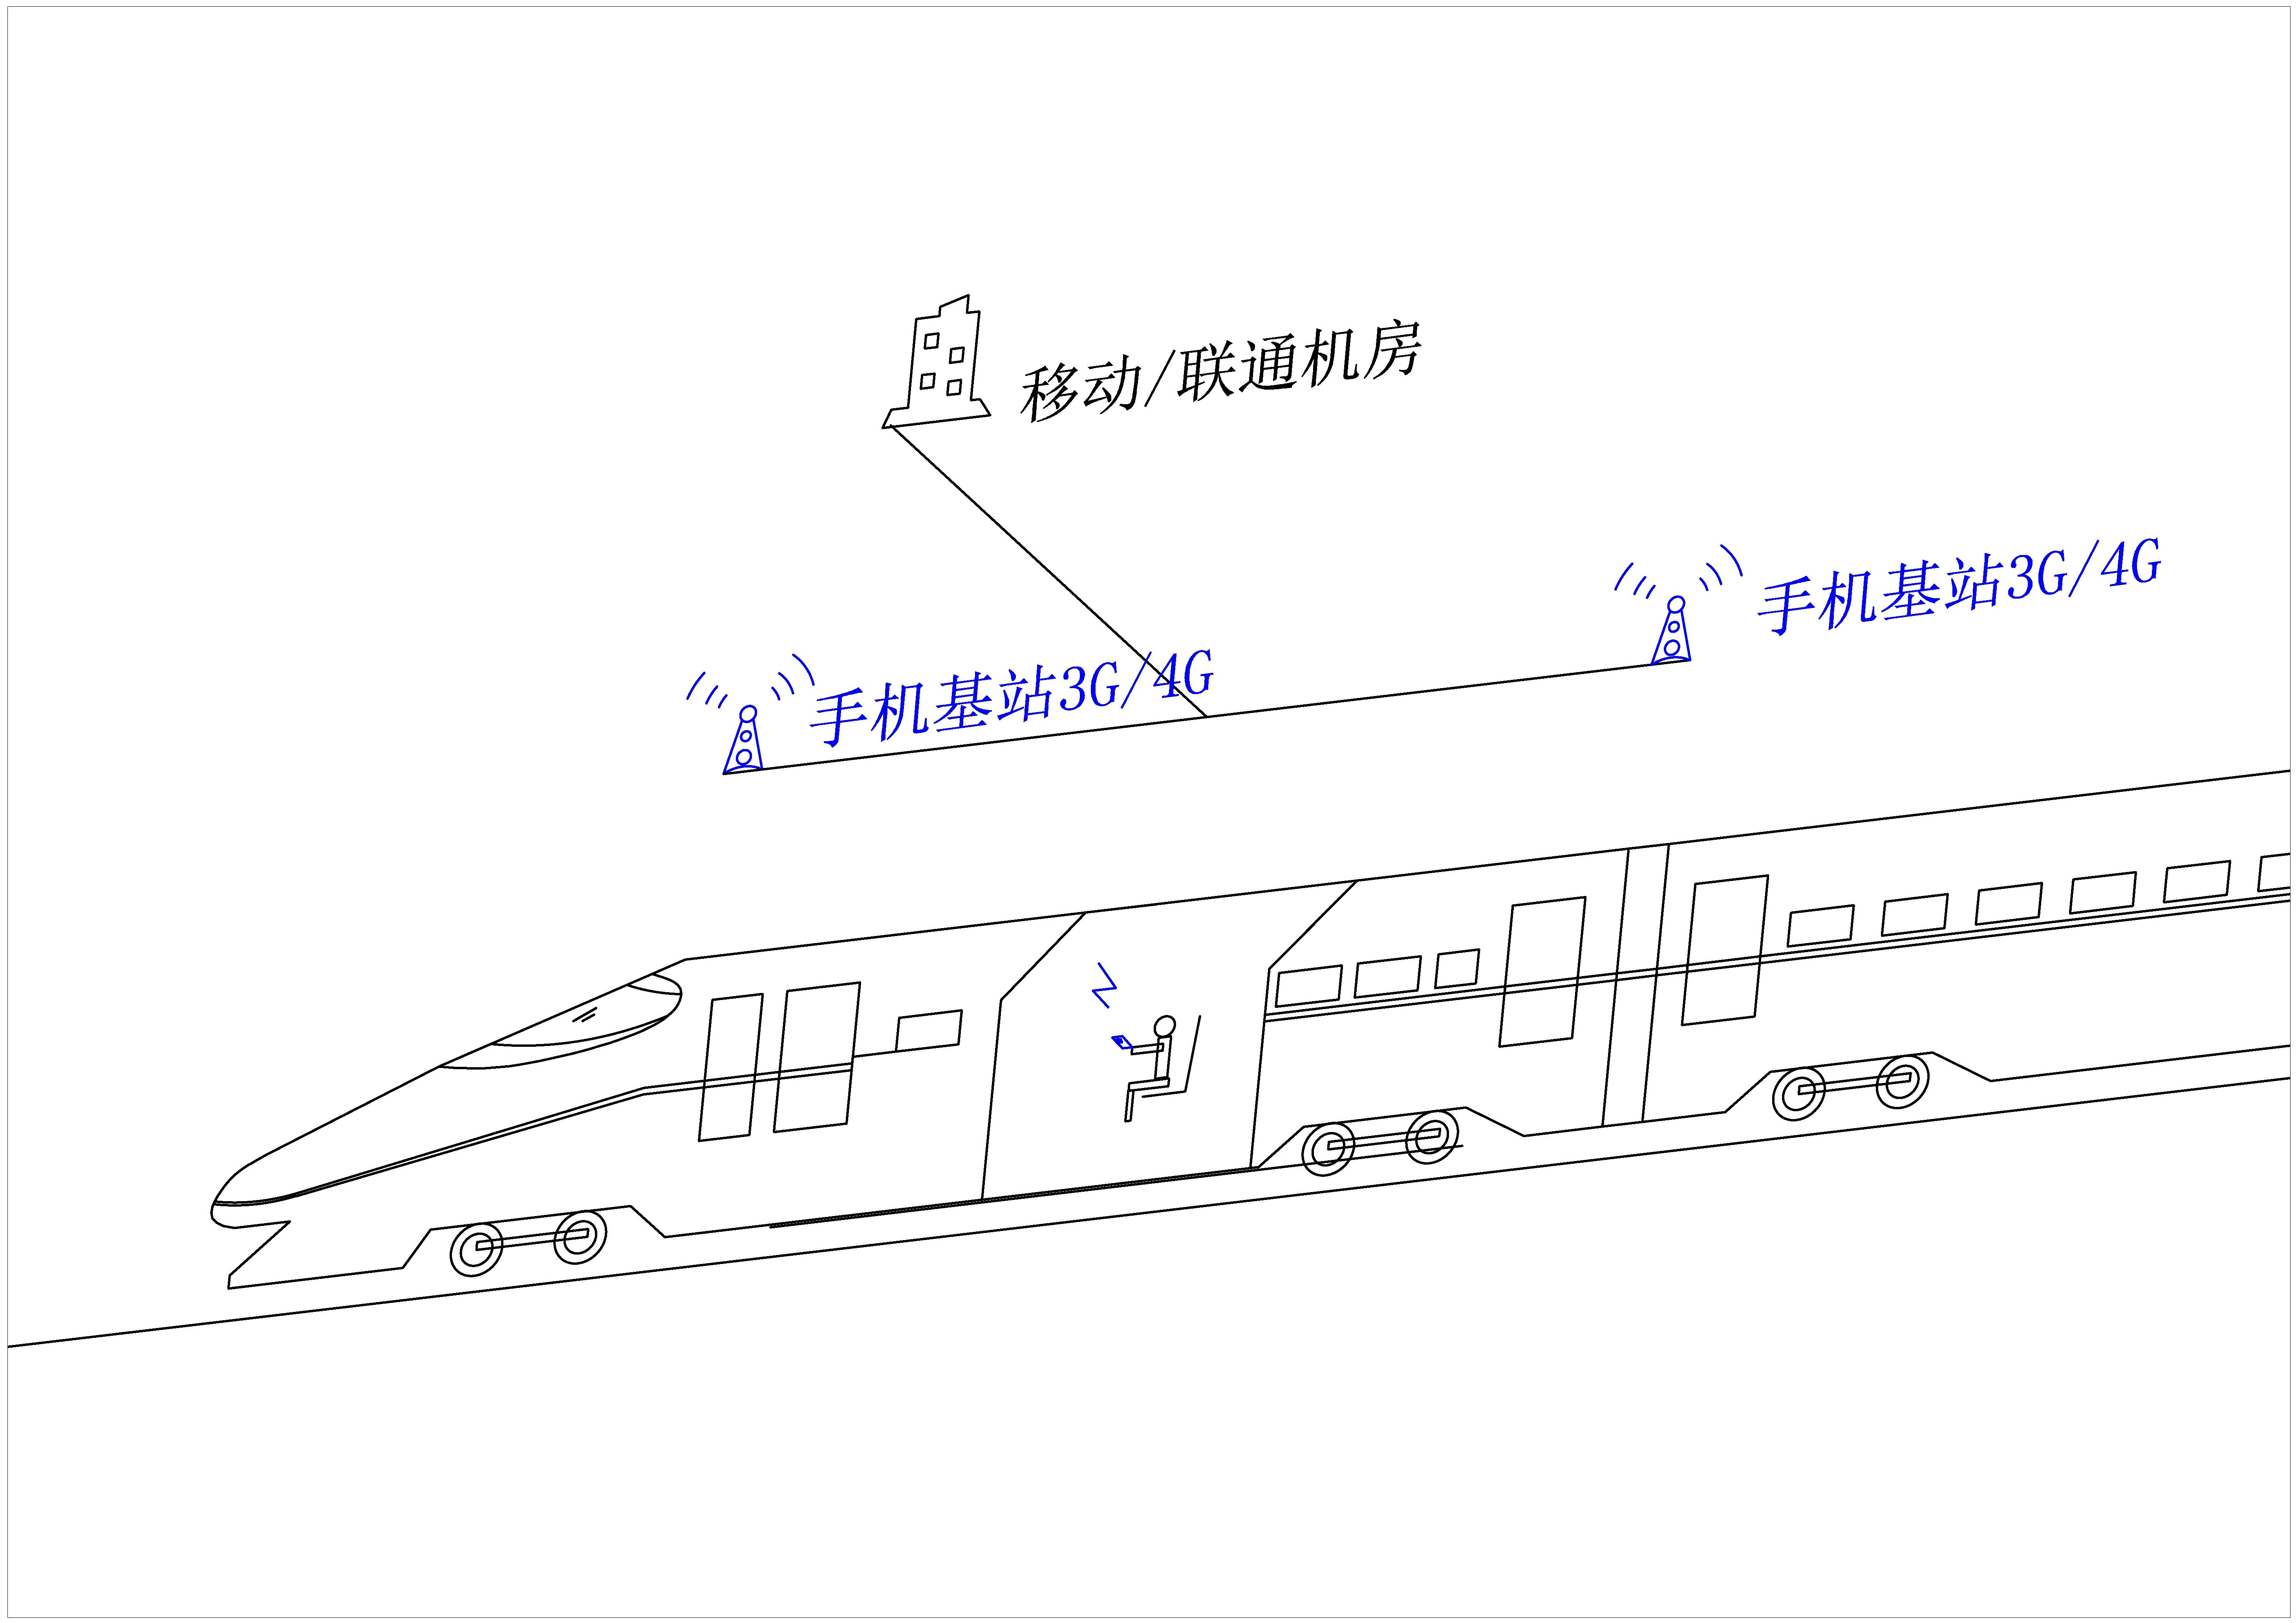 北京⇔上海の高速鉄道（高铁）「復興号」 Wi-Fiの使い方 : 中国文化に心惹かれて